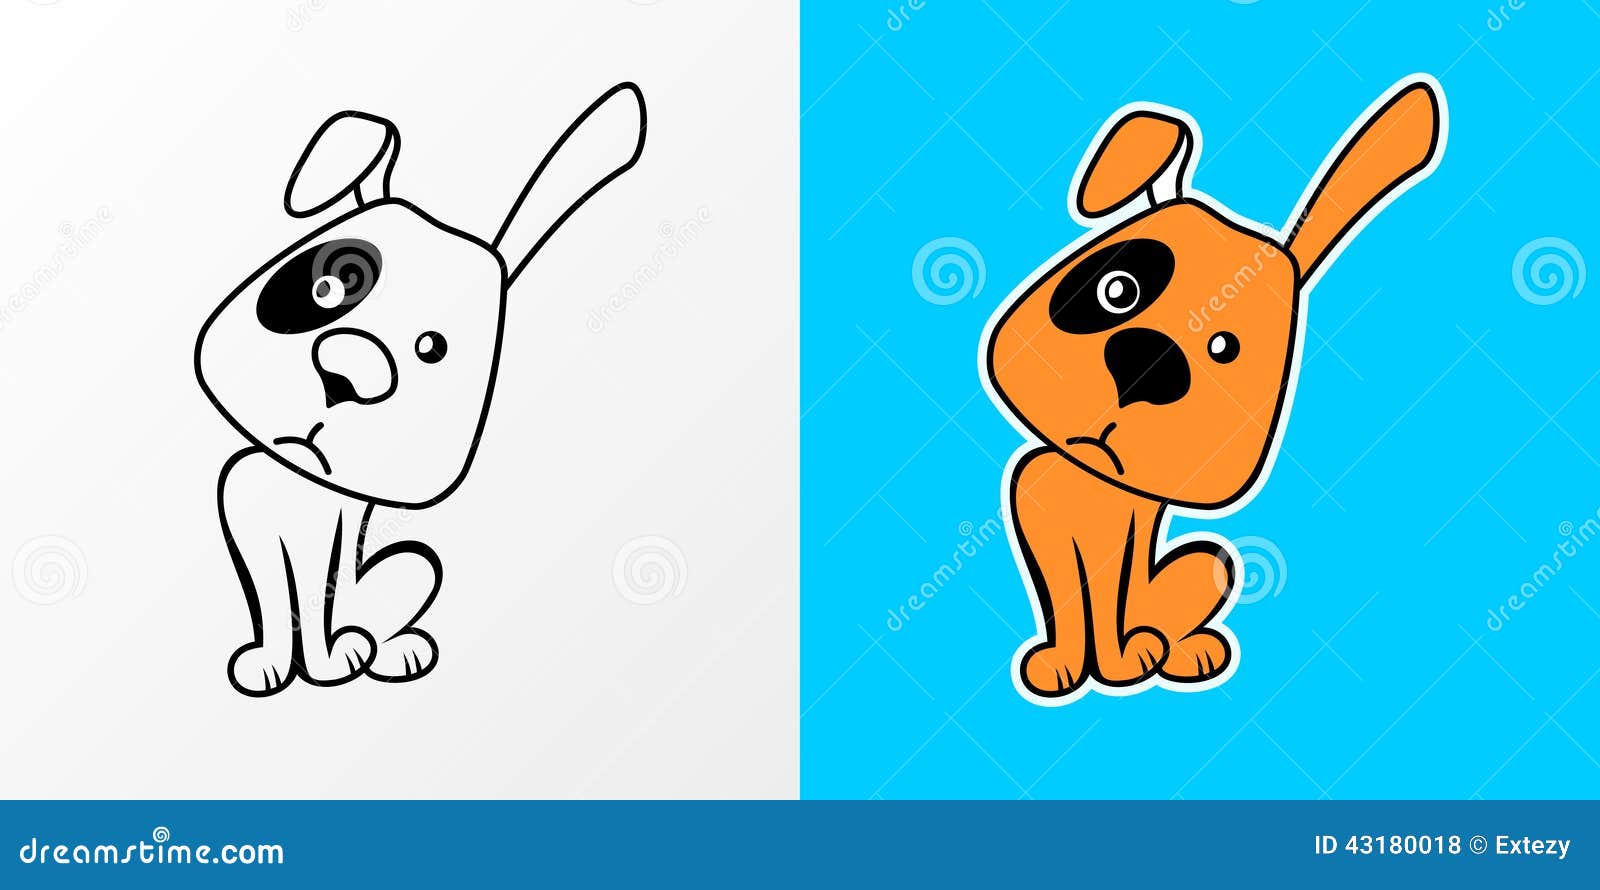 Vector Illustration of Cartoon Dog Stock Vector - Illustration of